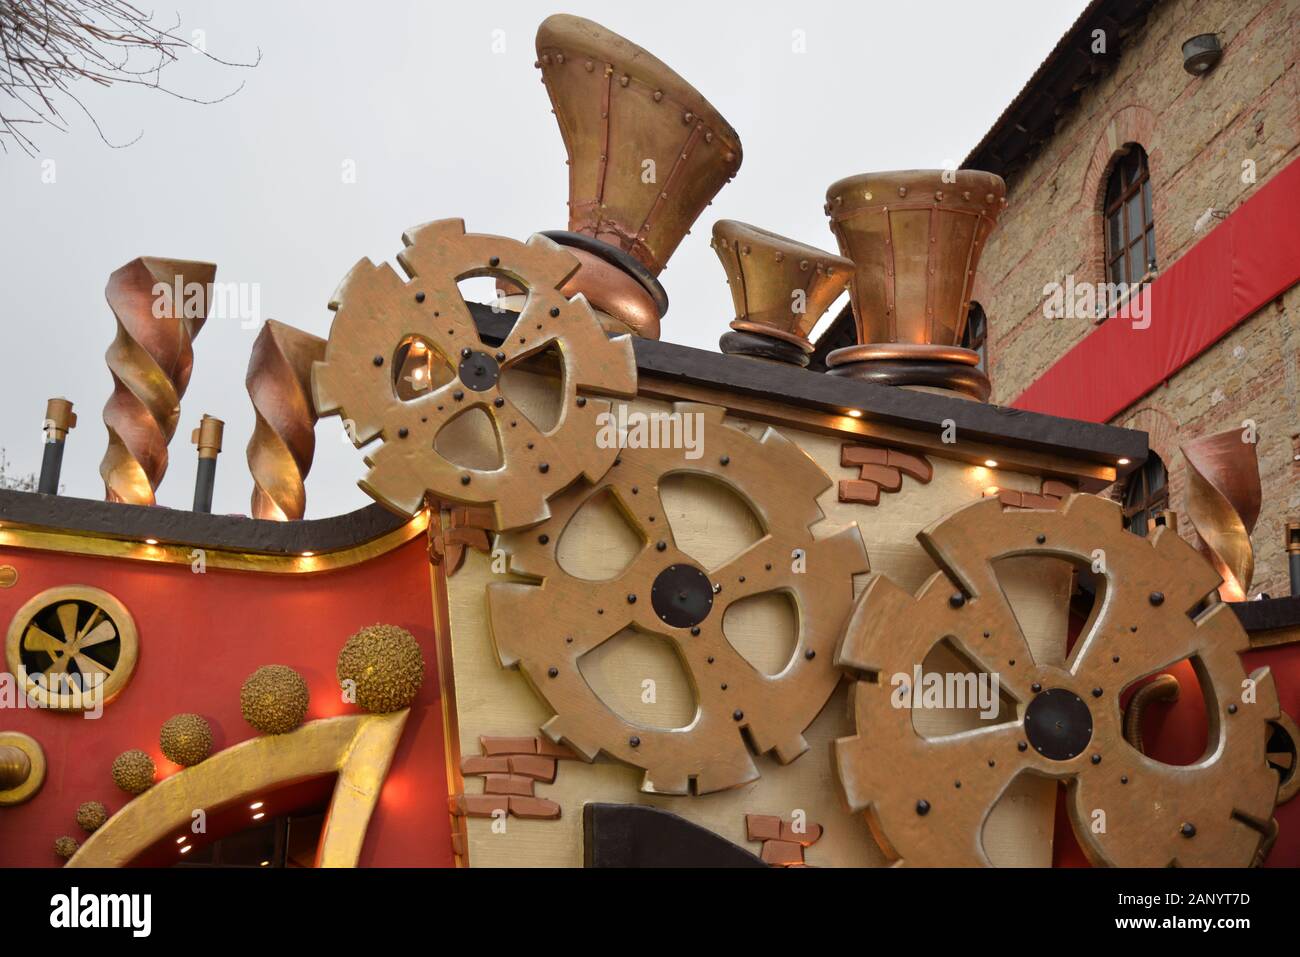 Mécanisme imaginaire avec roues à crémaillère utilisées comme décor dans un bazar de Noël appelé "mal des elfes" situé à Trikala, Grèce. Banque D'Images